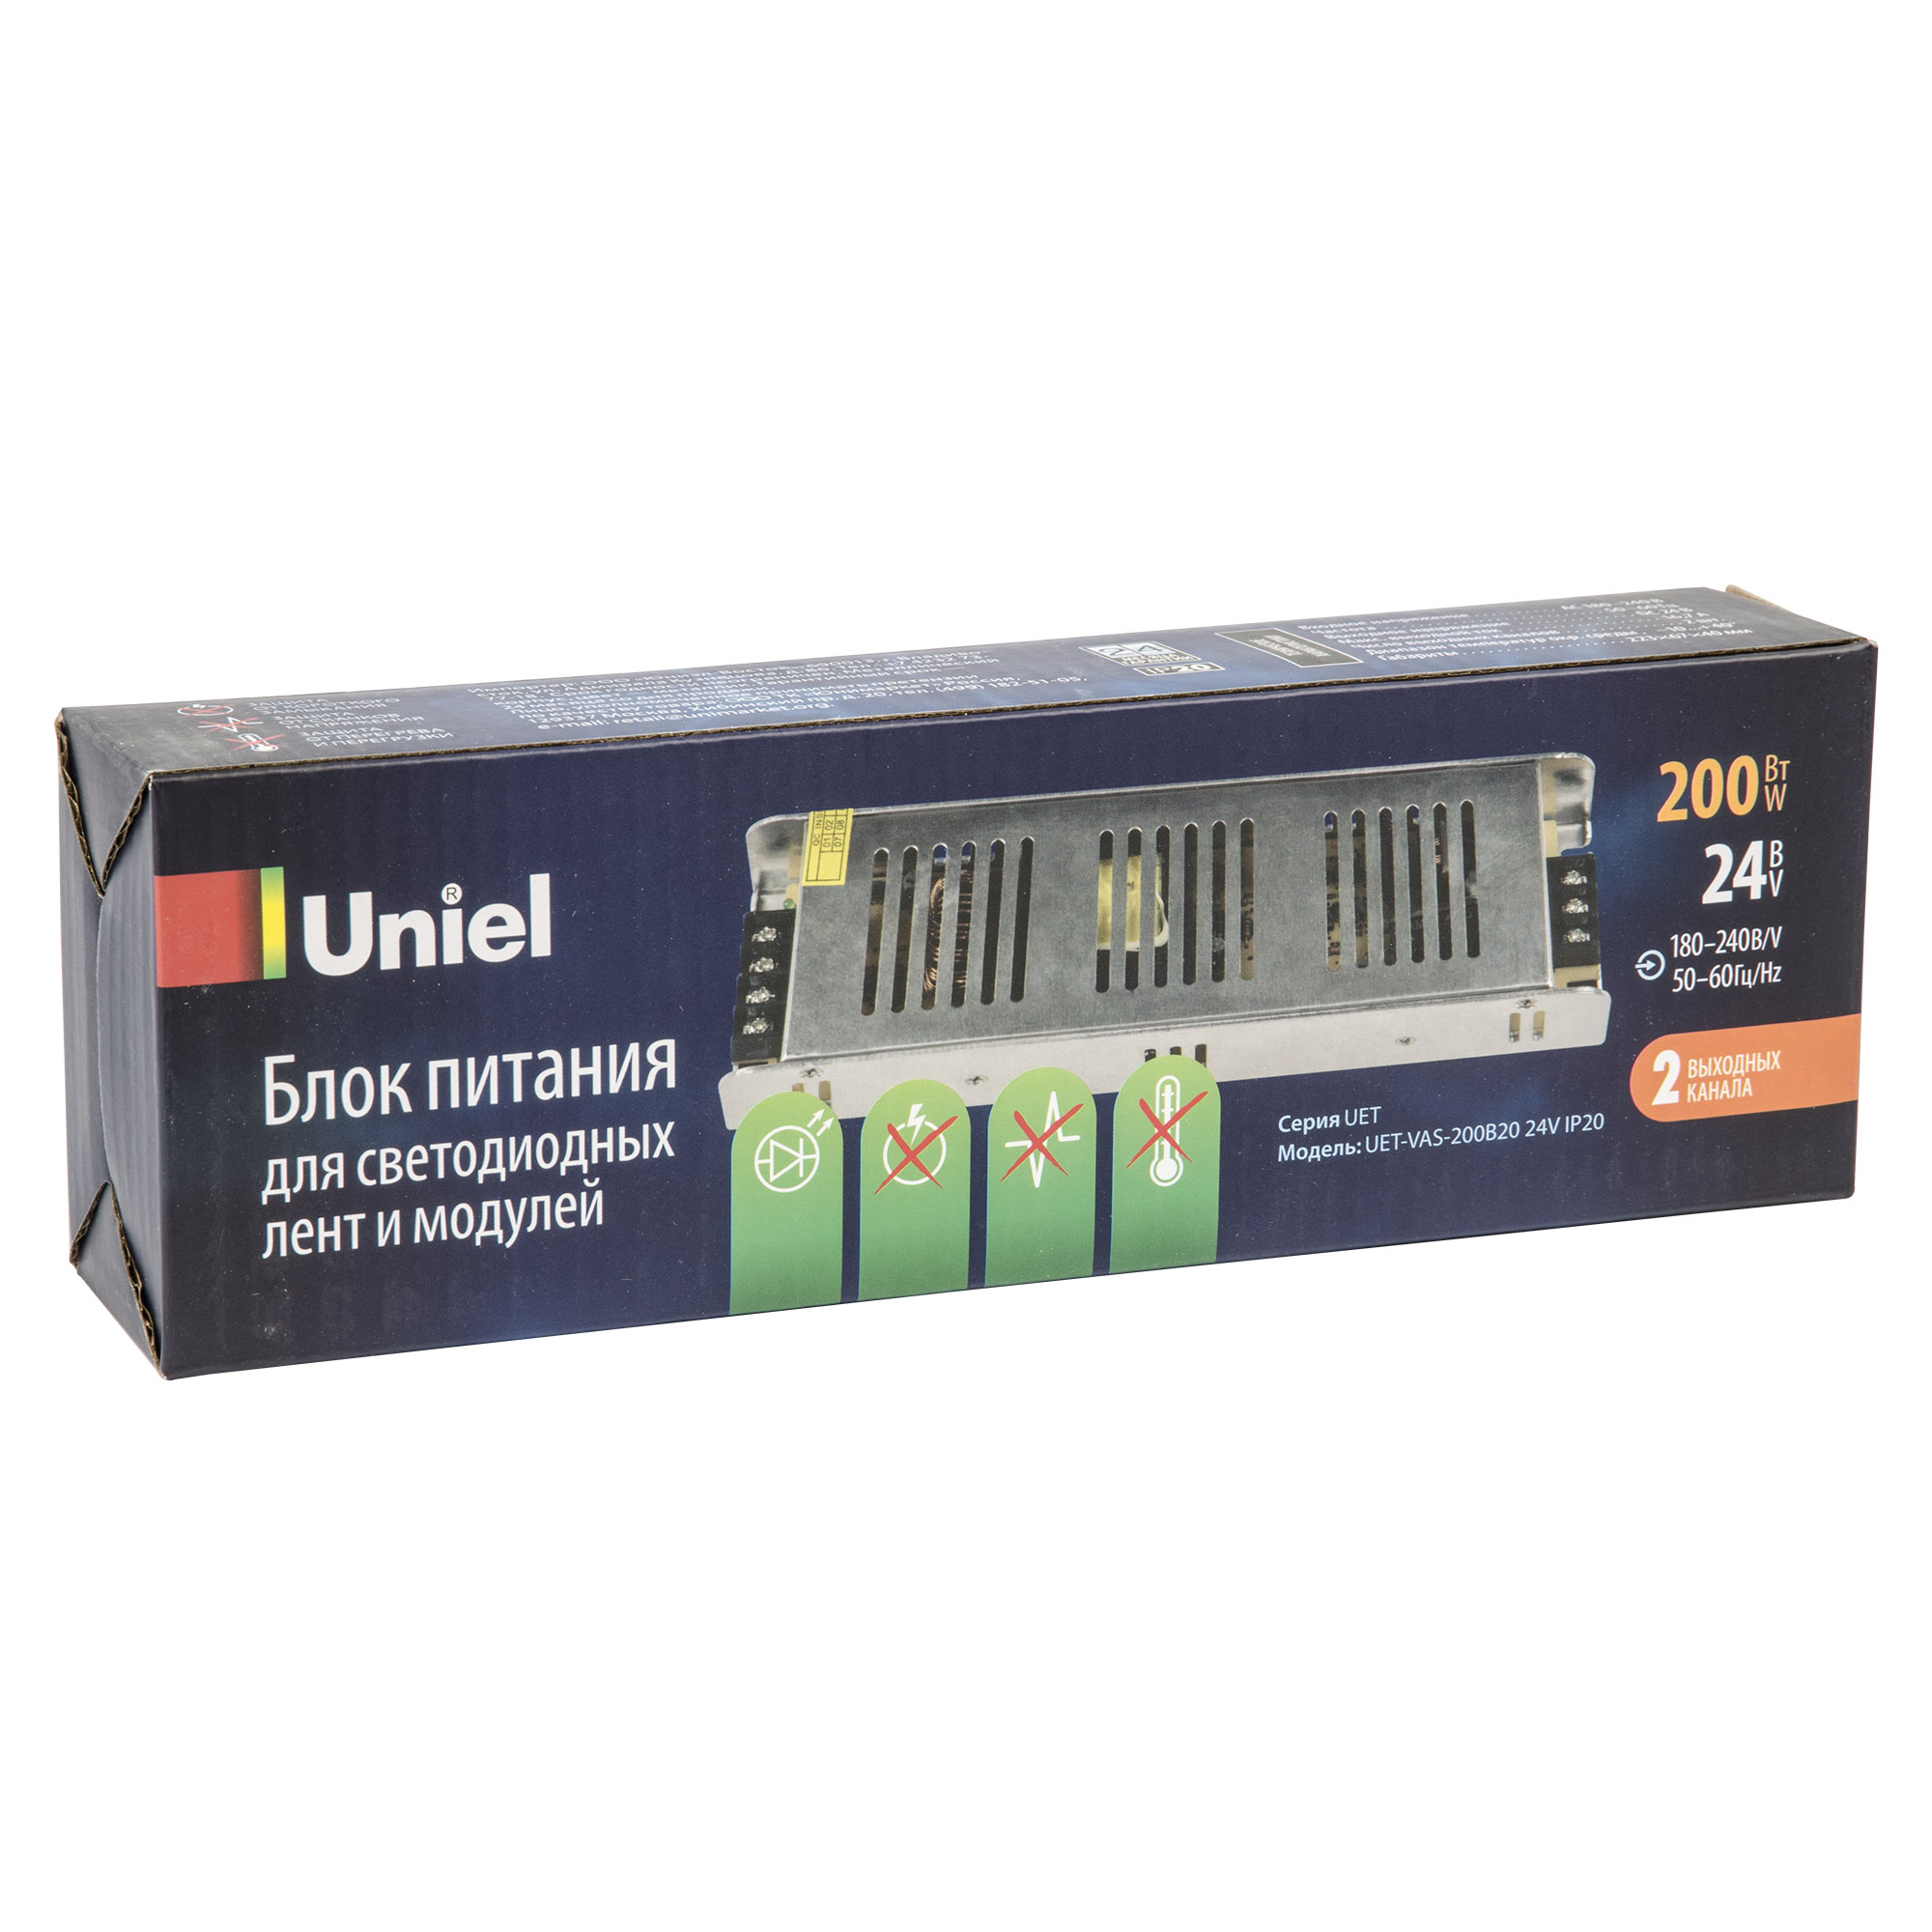 Блок питания Uniel UET-VAS-200B20 24V IP20 UL-00002433